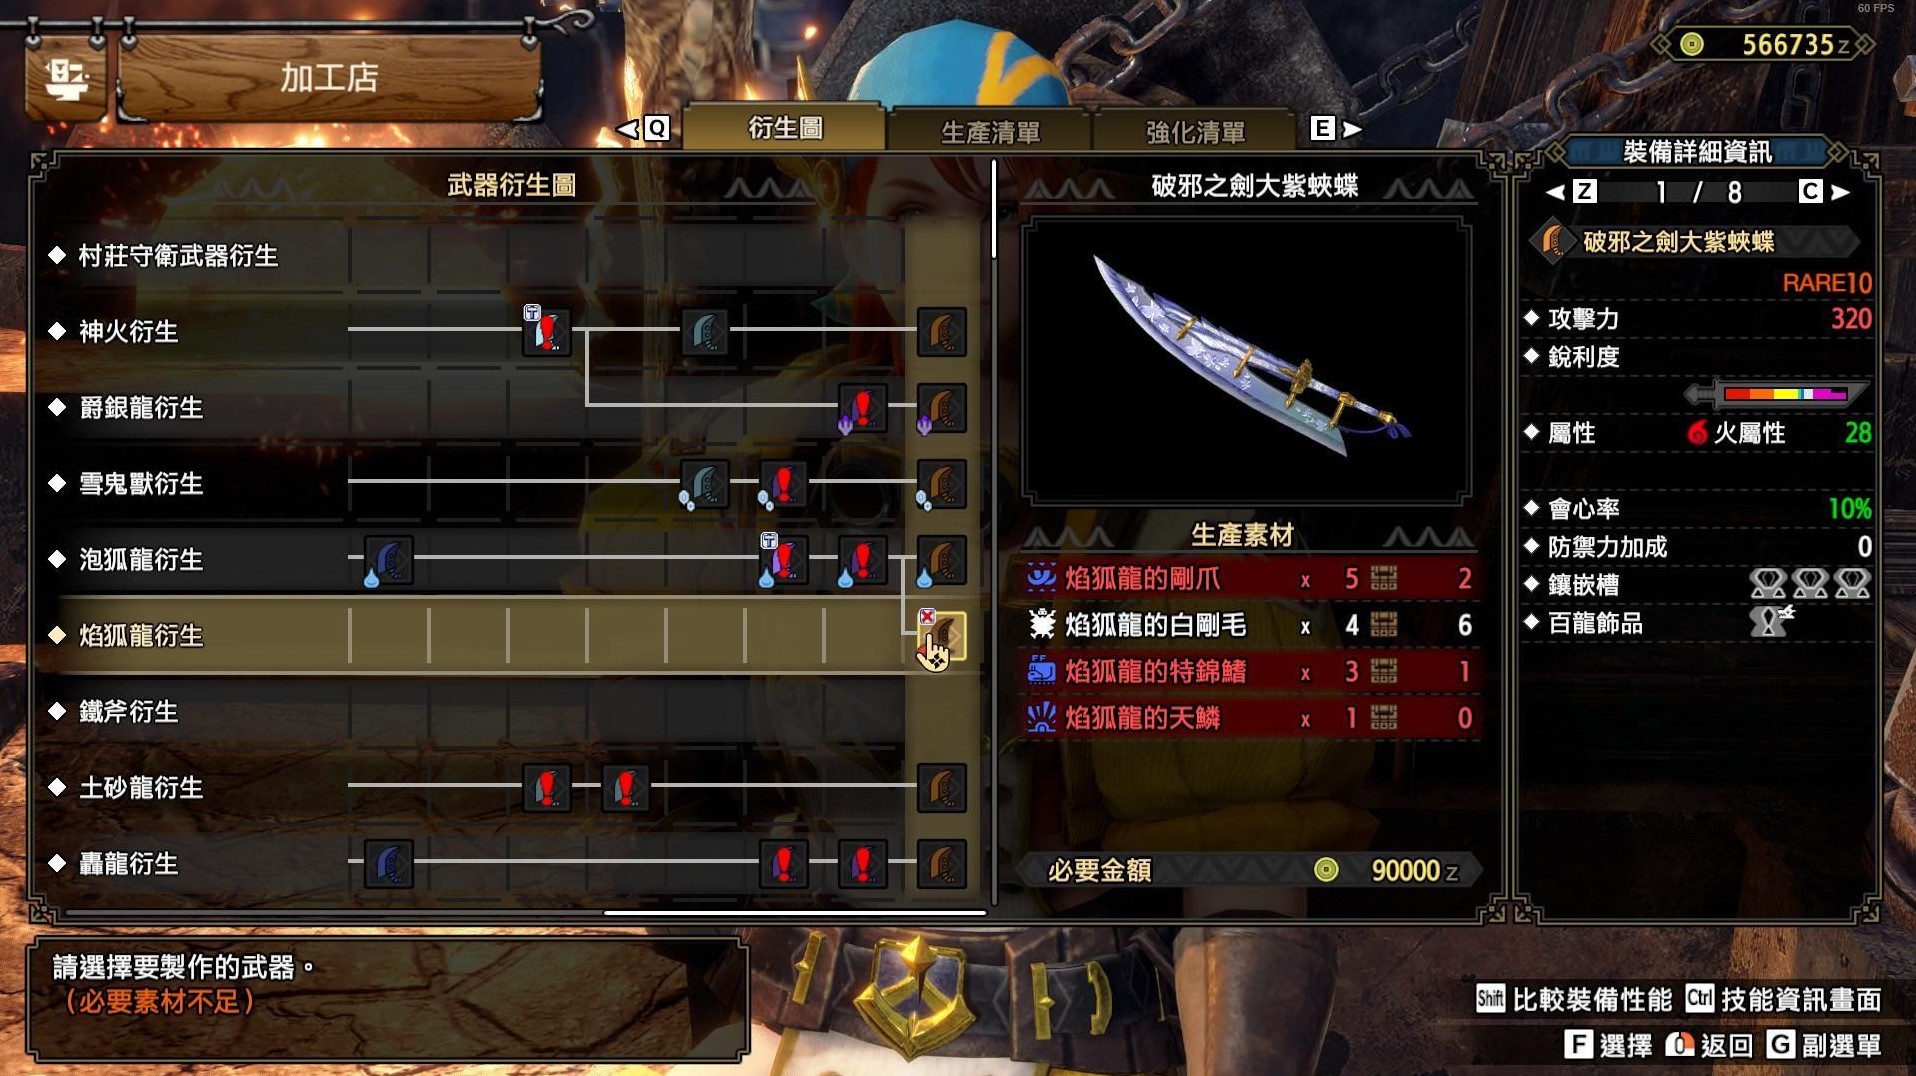 《怪物猎人崛起》曙光DLC第二弹配信新增武器图鉴 新增武器数据一览 - 第1张